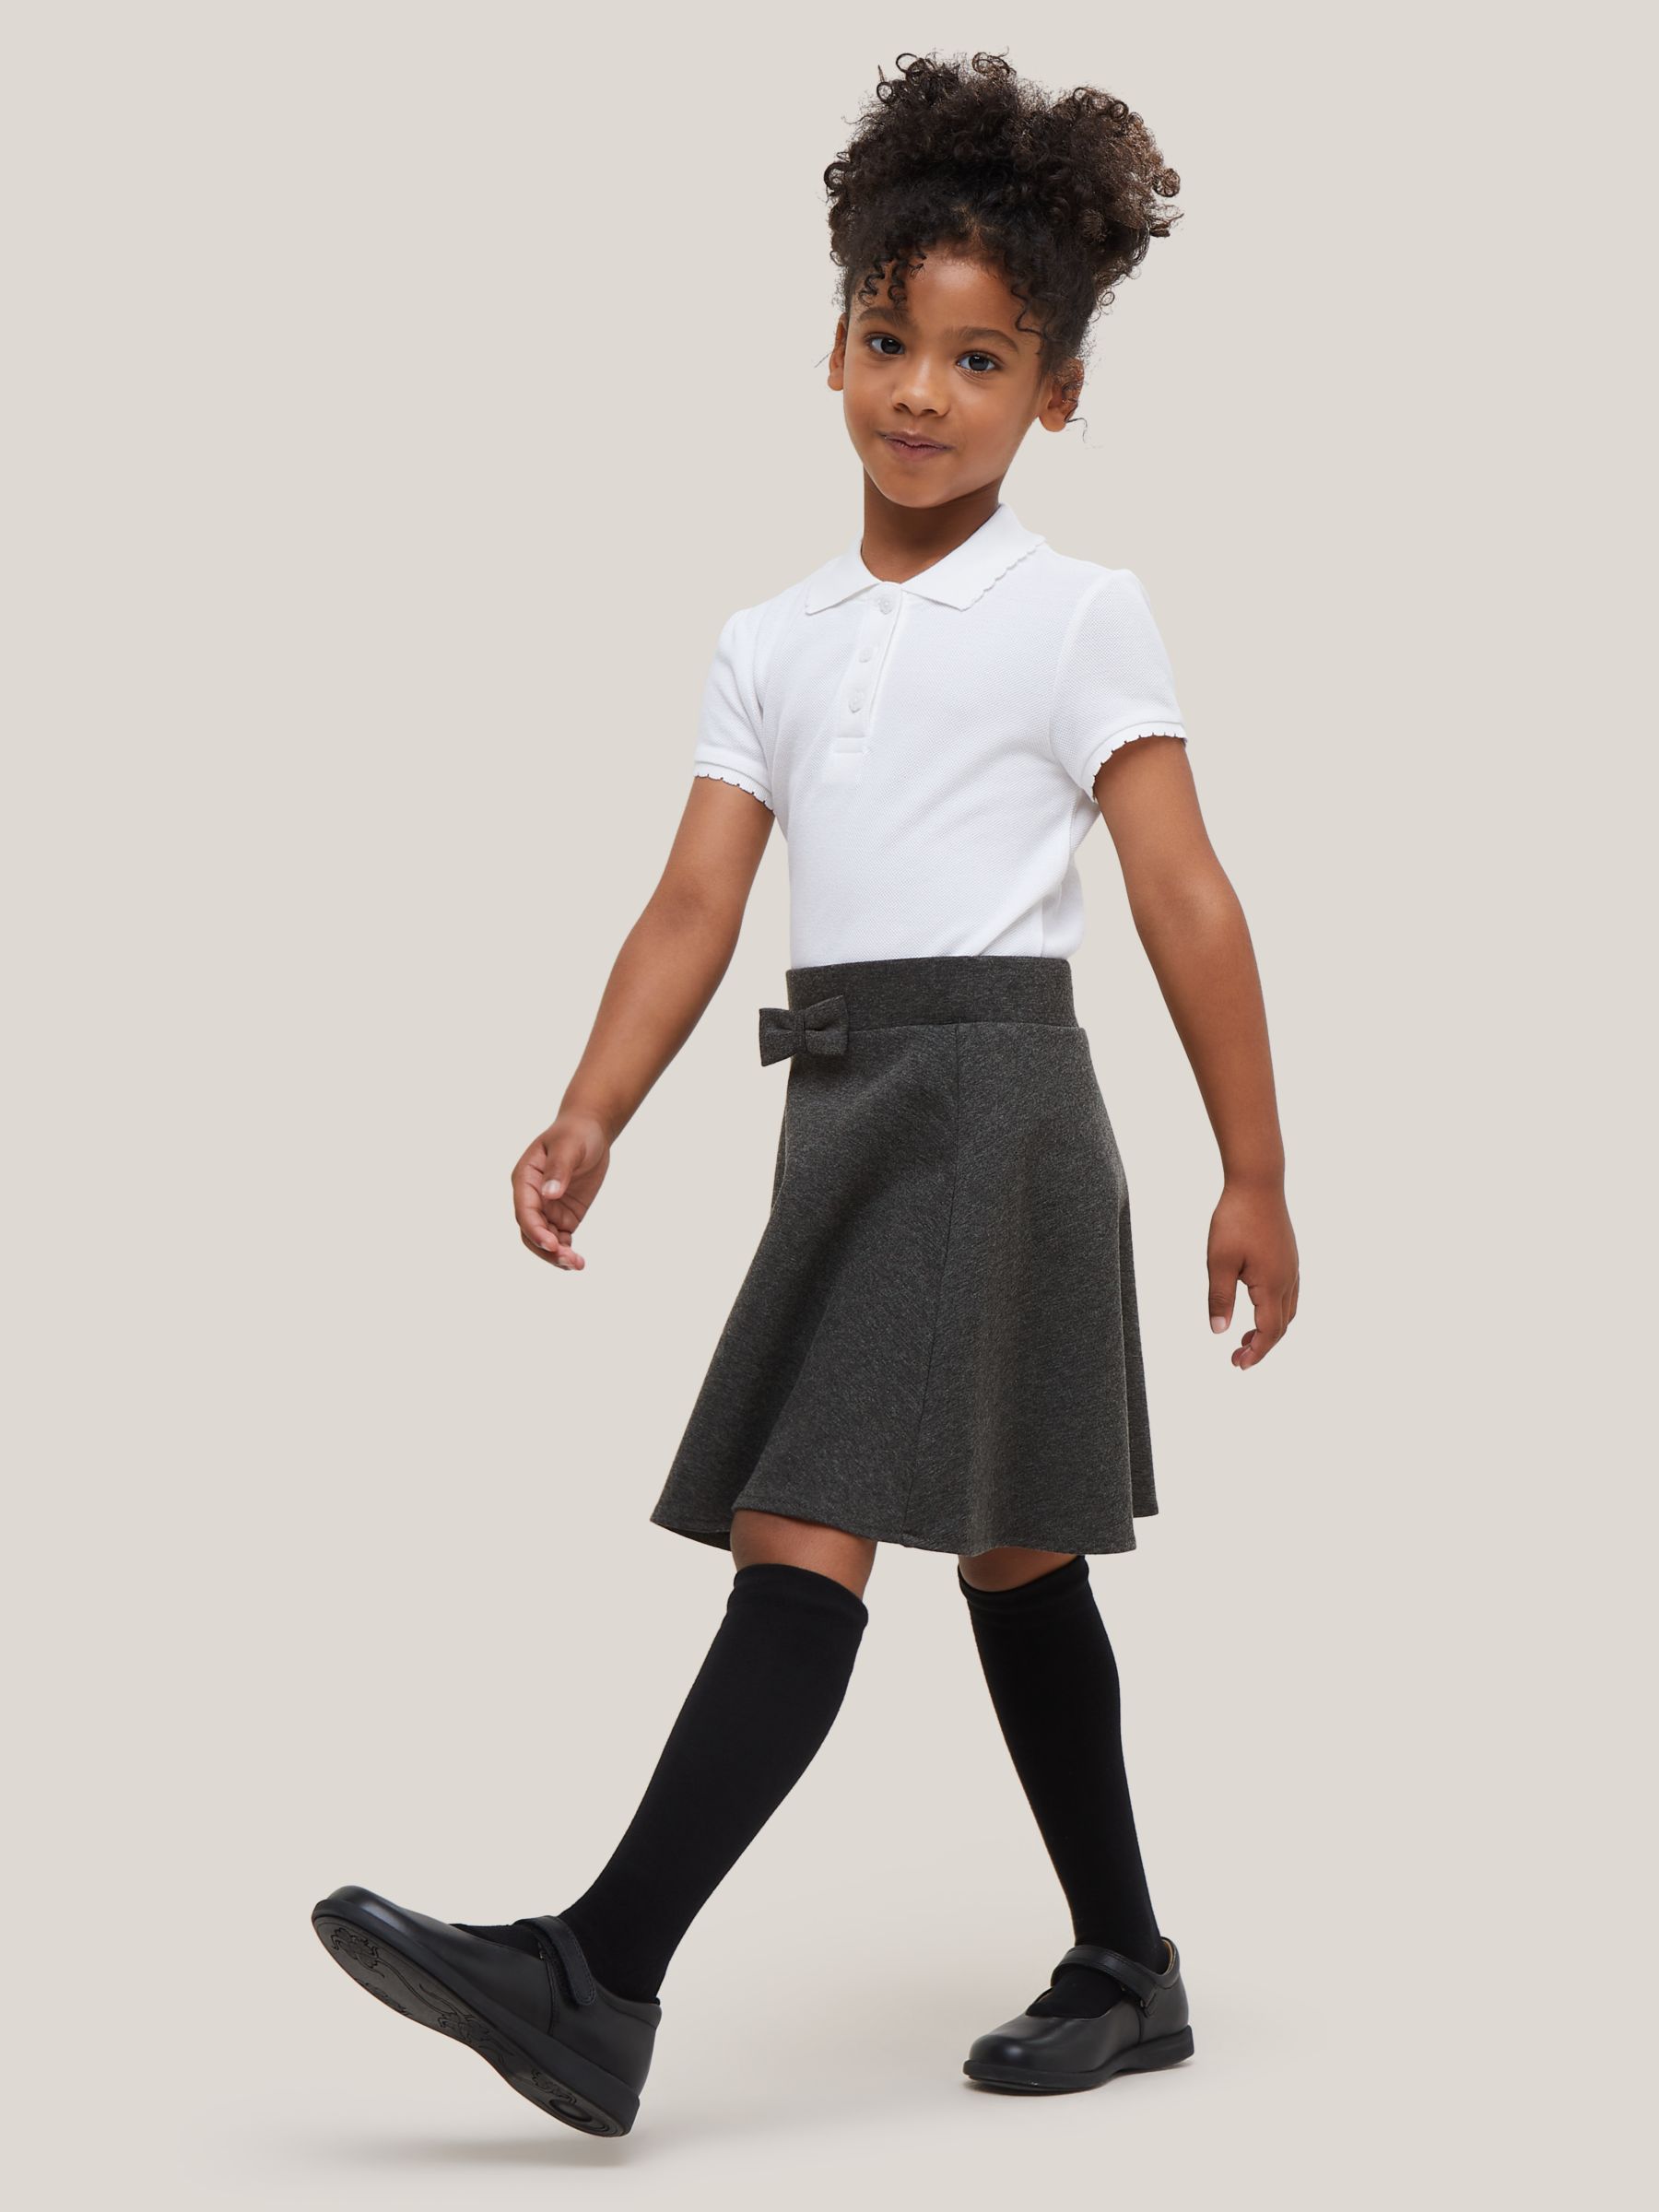 Buy John Lewis Girls' Skater School Skirt, Grey Online at johnlewis.com